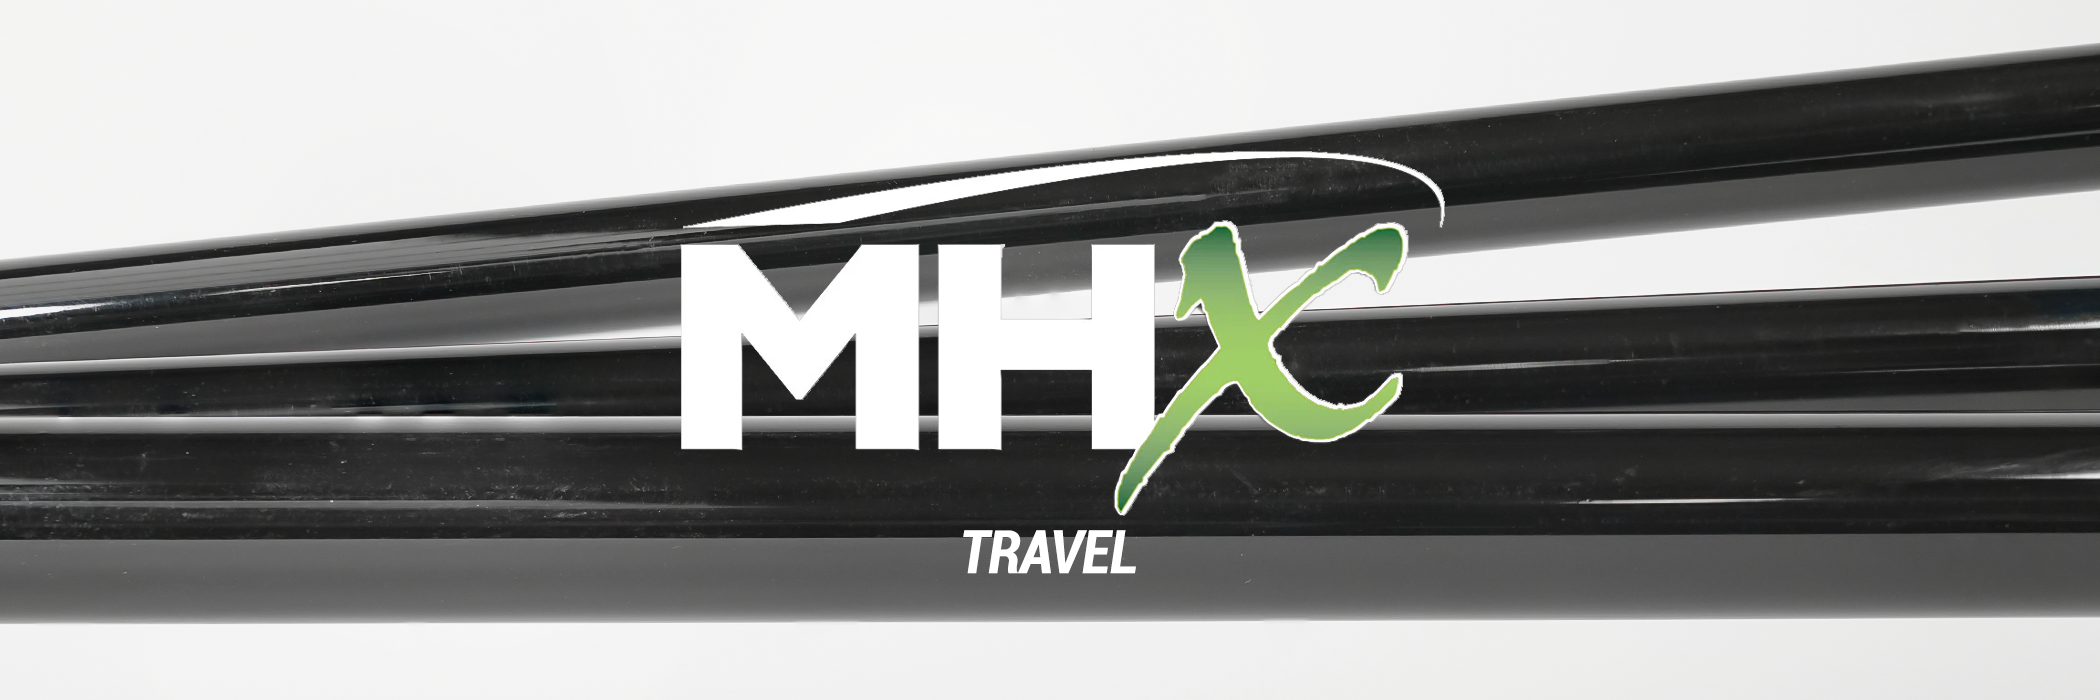 MHX - Travel